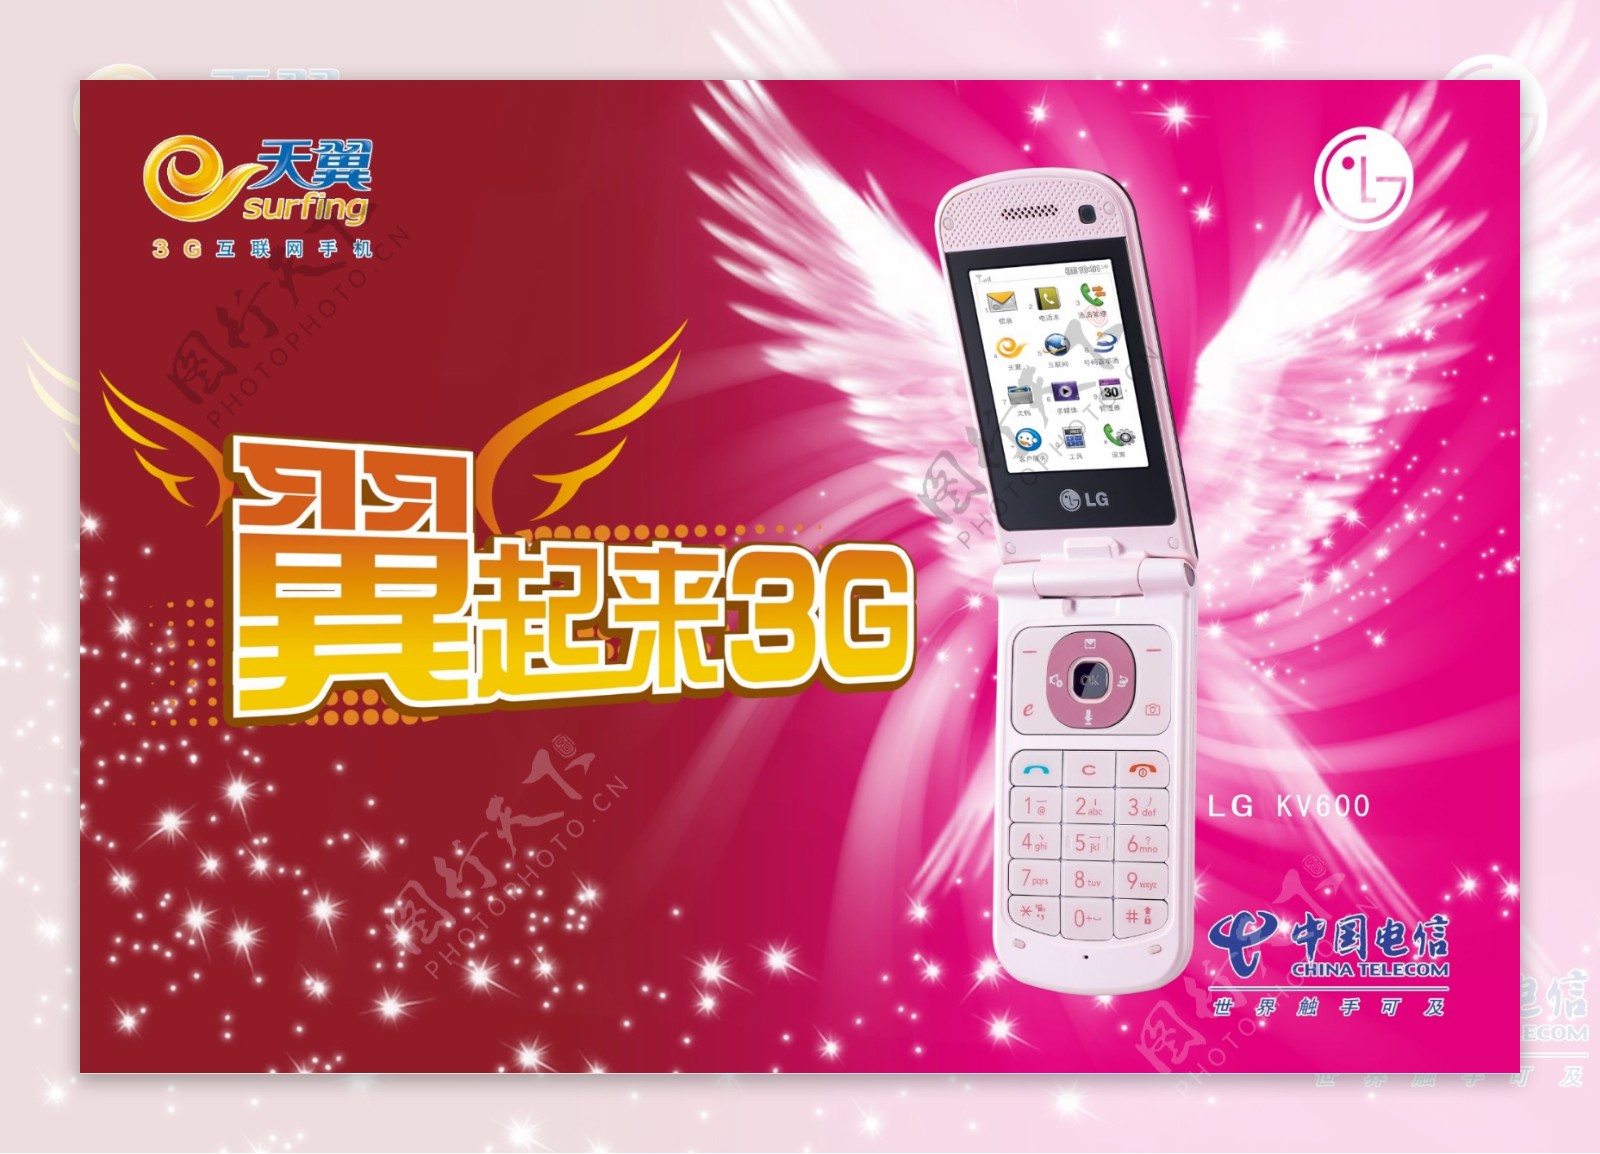 中国电信天翼广告3g手机广告图片